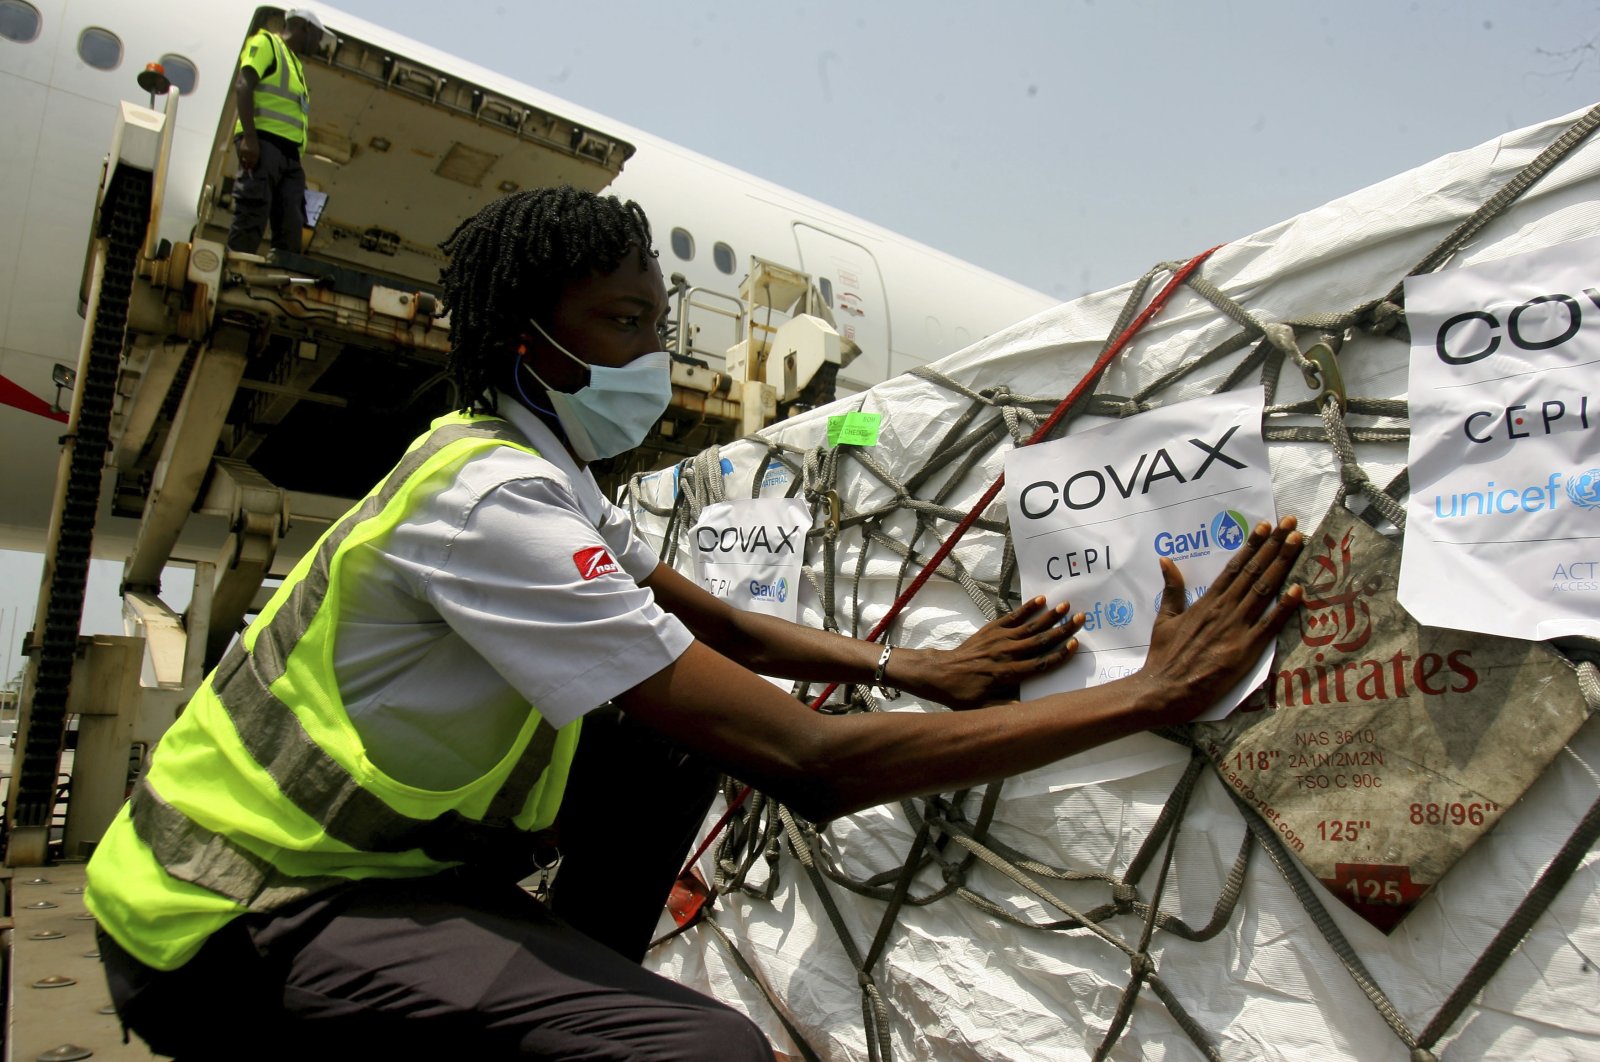 COVAX mengirimkan 1 miliar dosis vaksin COVID-19 ke negara-negara miskin